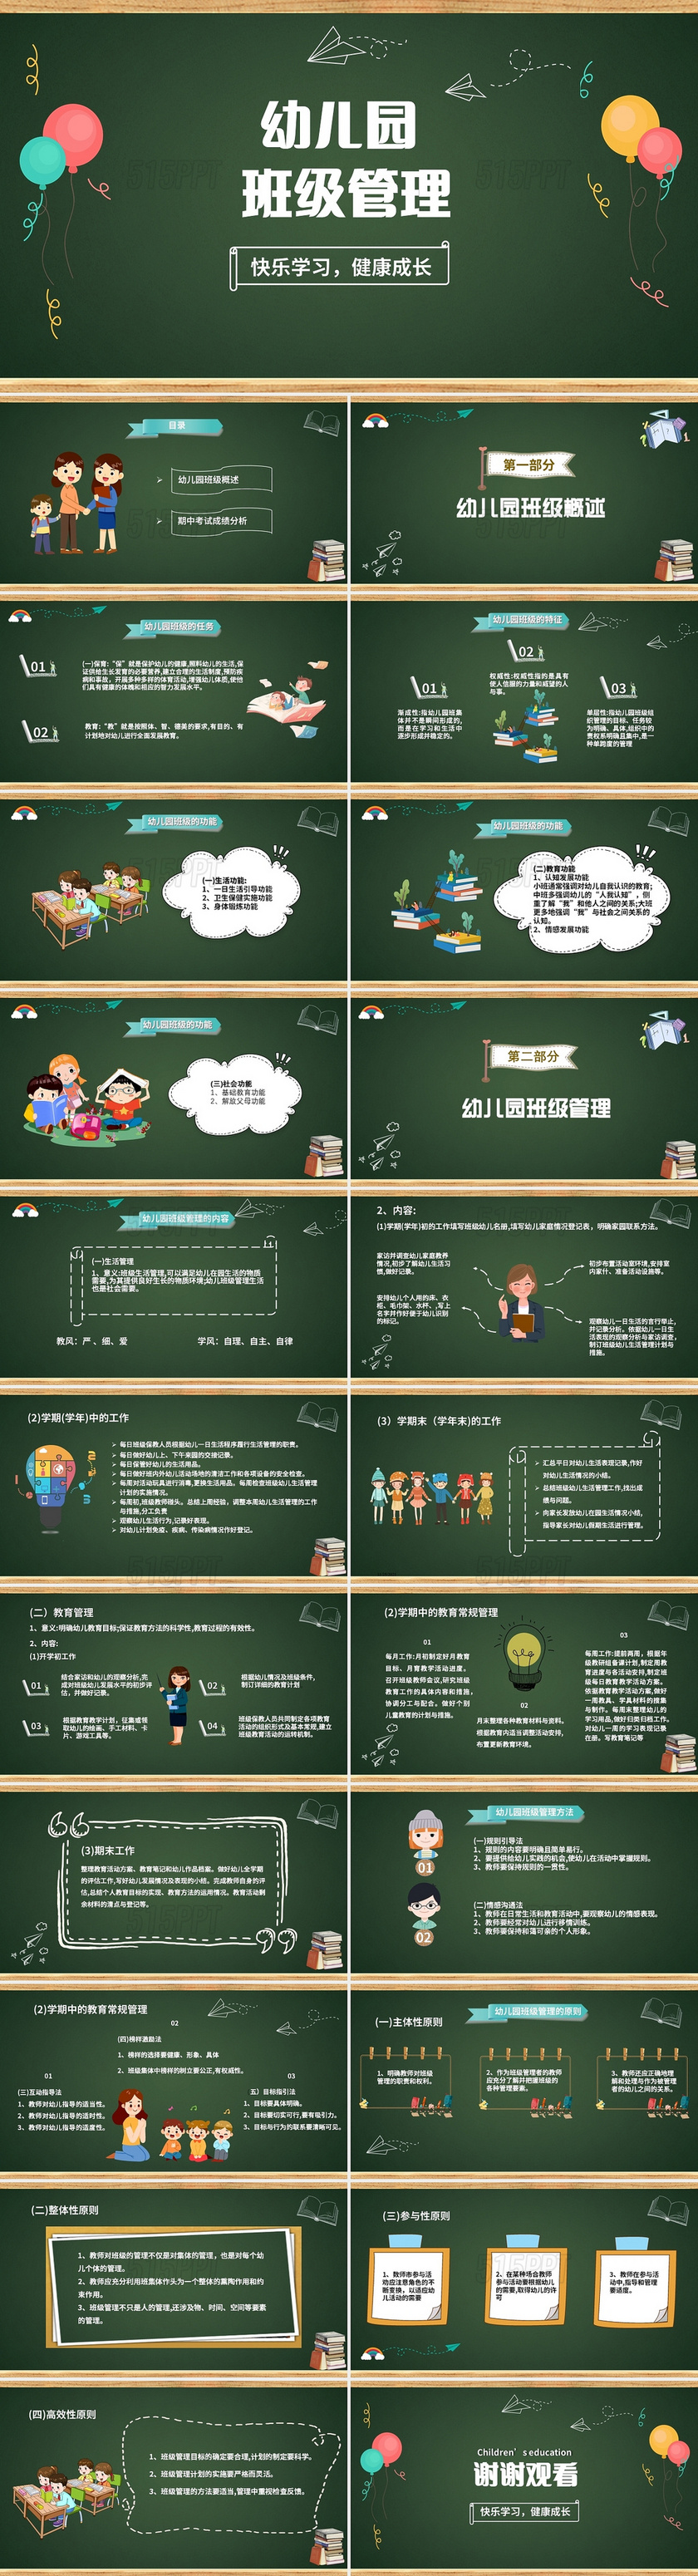 绿色 卡通 简约 手绘 幼儿园班级管理PPT模板幼儿园班级管理(2)